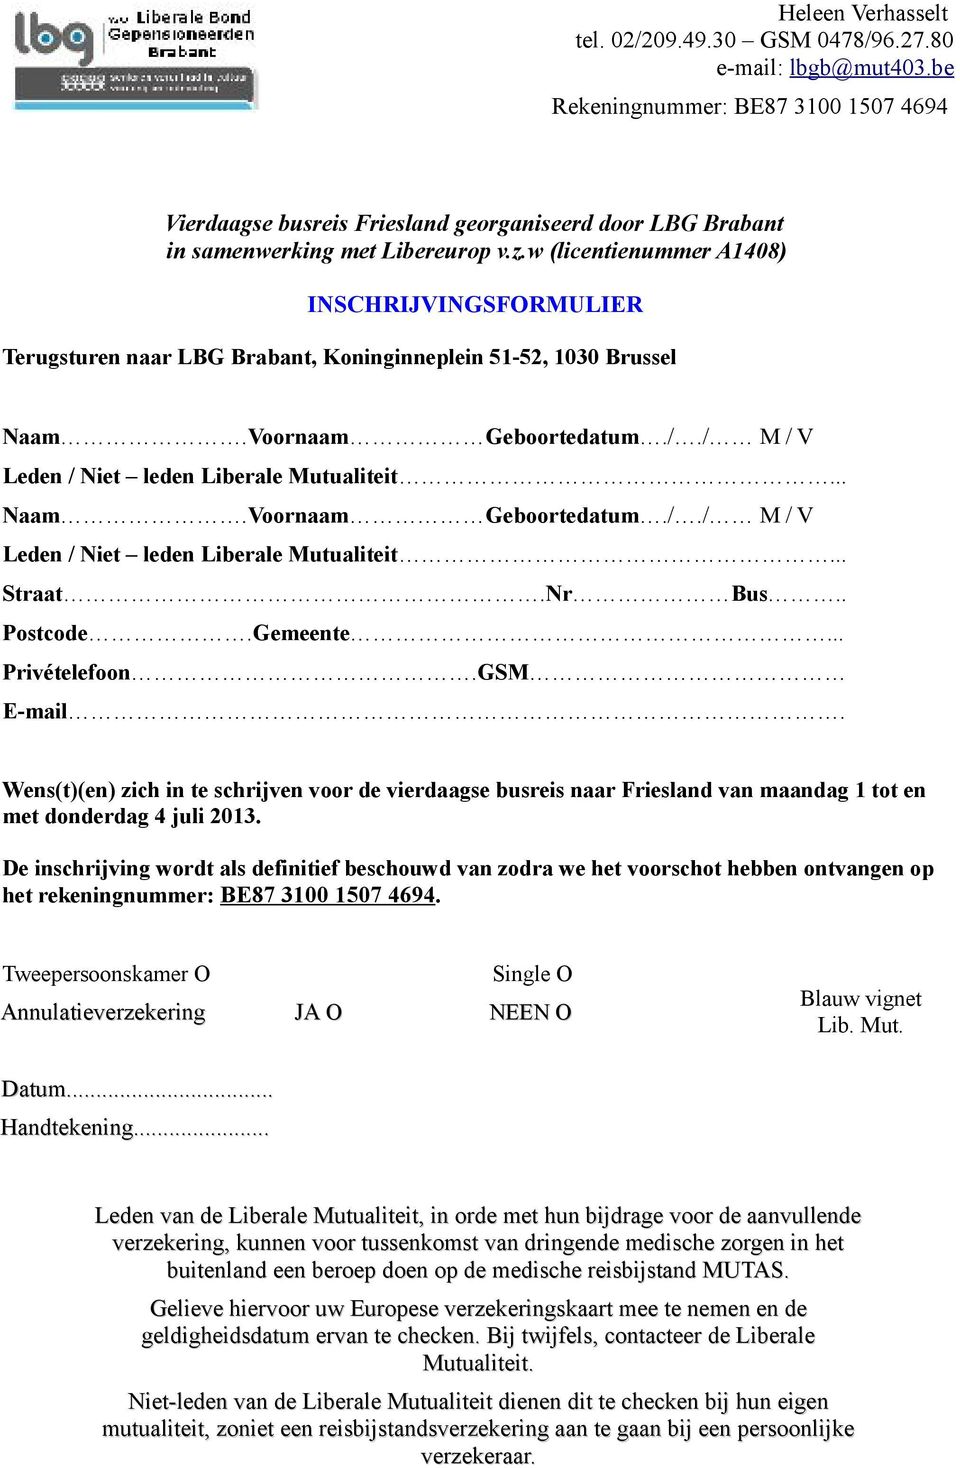 Nr Bus.. Postcode.Gemeente... Privételefoon.GSM E-mail. Wens(t)(en) zich in te schrijven voor de vierdaagse busreis naar Friesland van maandag 1 tot en met donderdag 4 juli 2013.